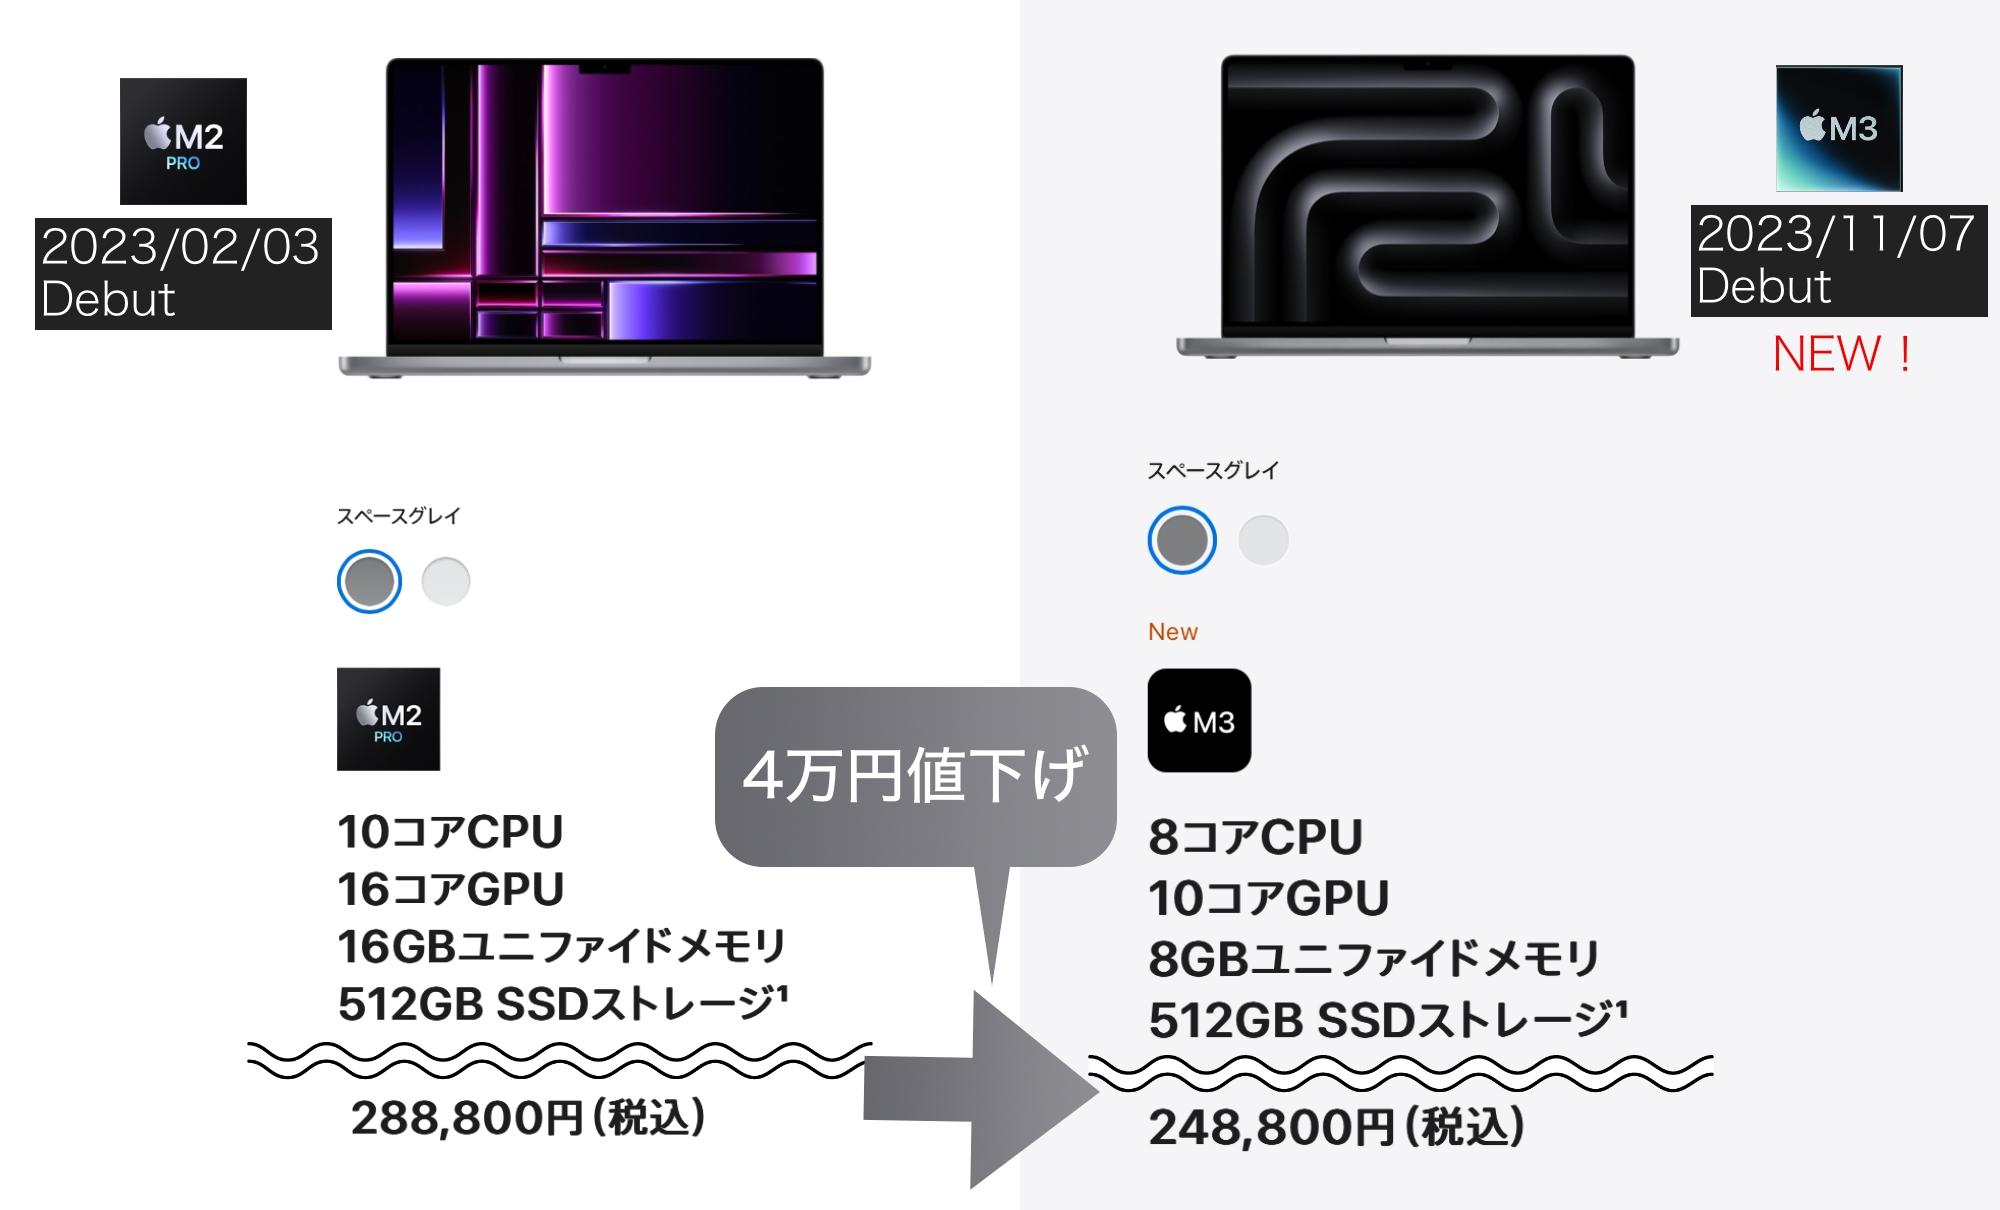 MacBook Pro 14インチ｢4万円値下げ｣に潜む闇と光 | ギズモード